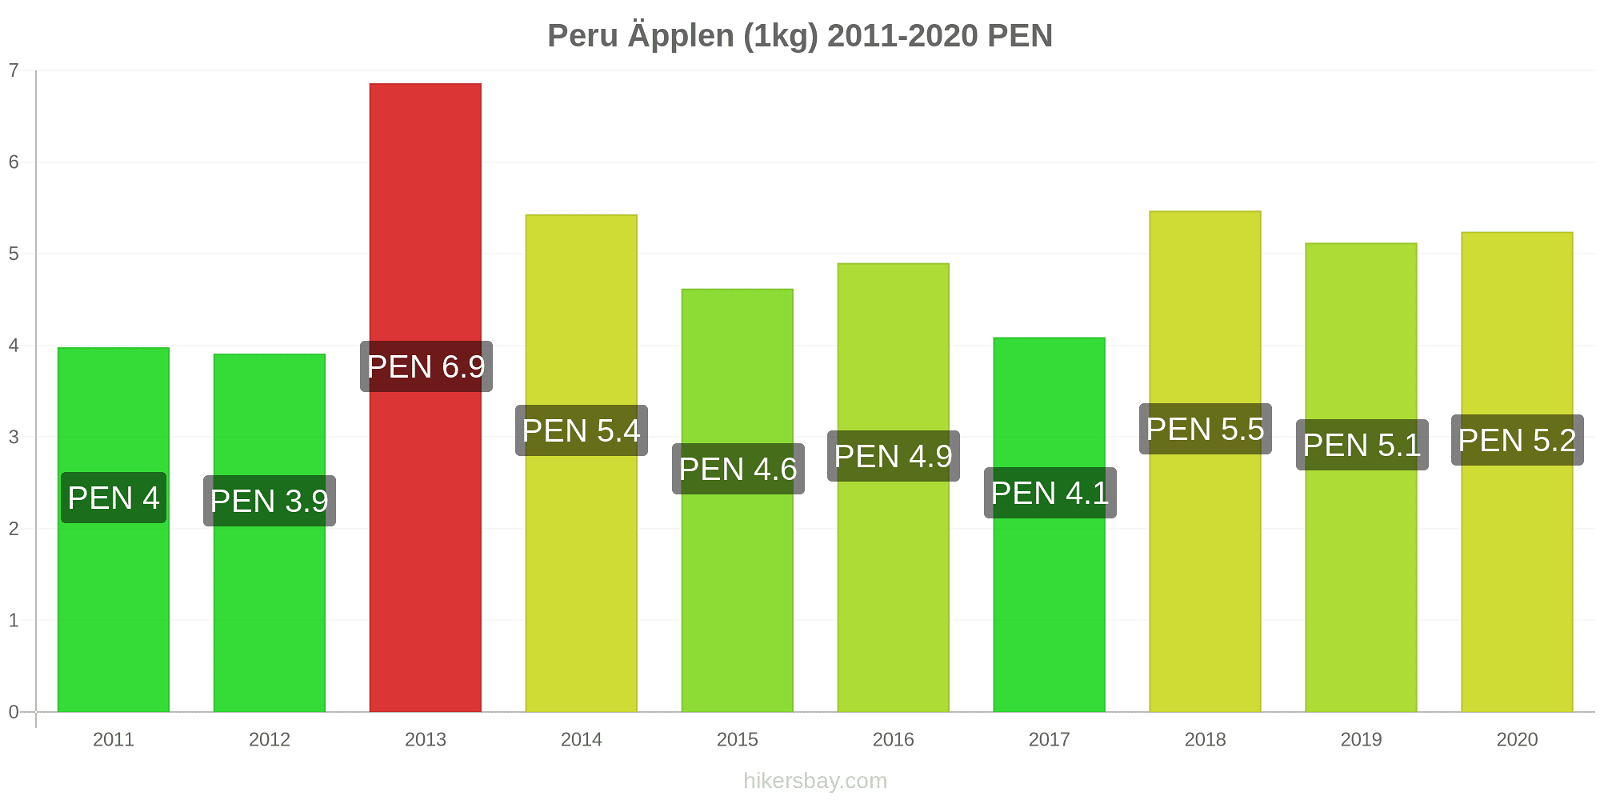 Peru prisförändringar Äpplen (1kg) hikersbay.com